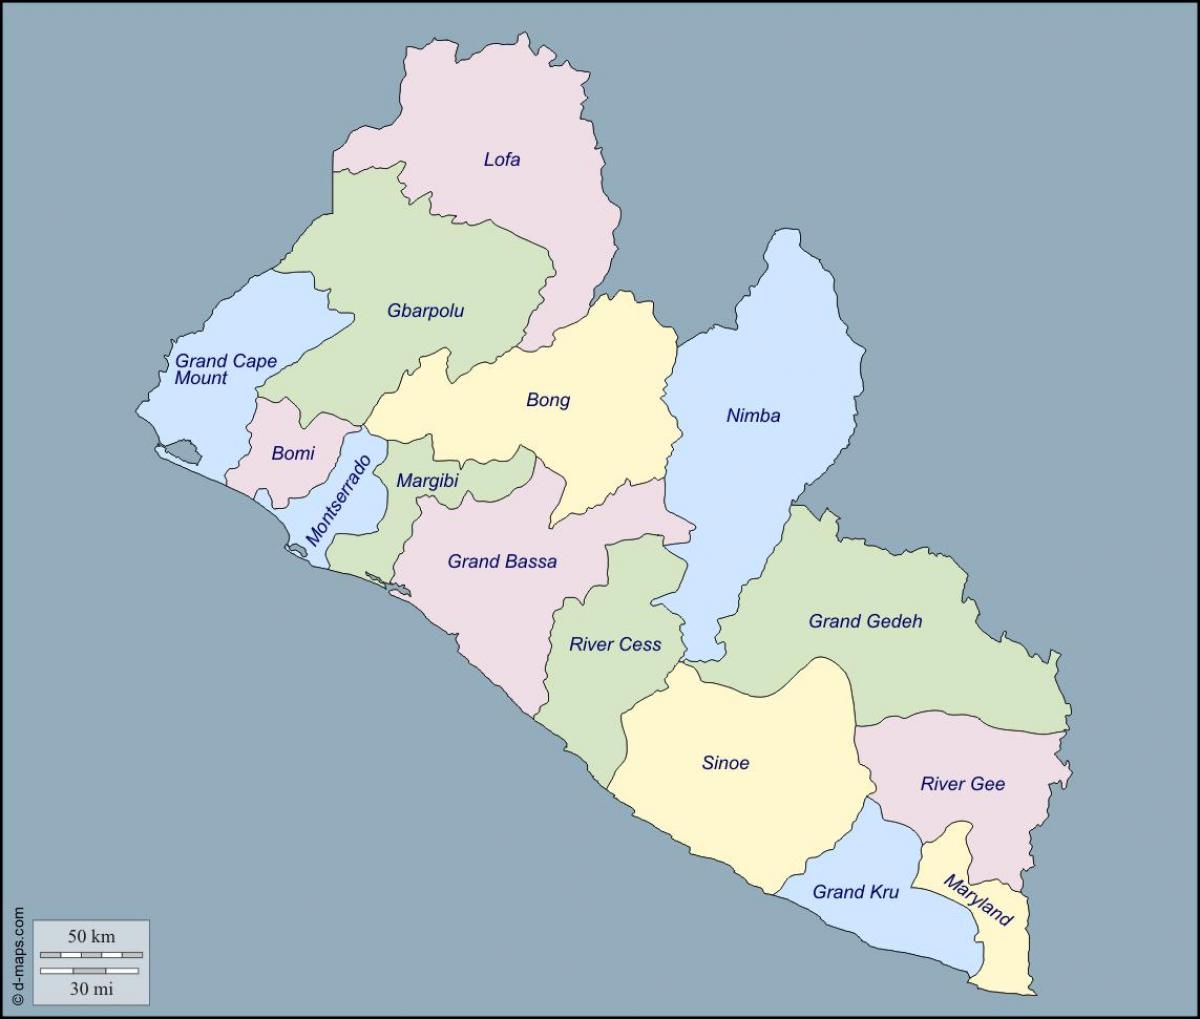 नक्शा लाइबेरिया के काउंटियों